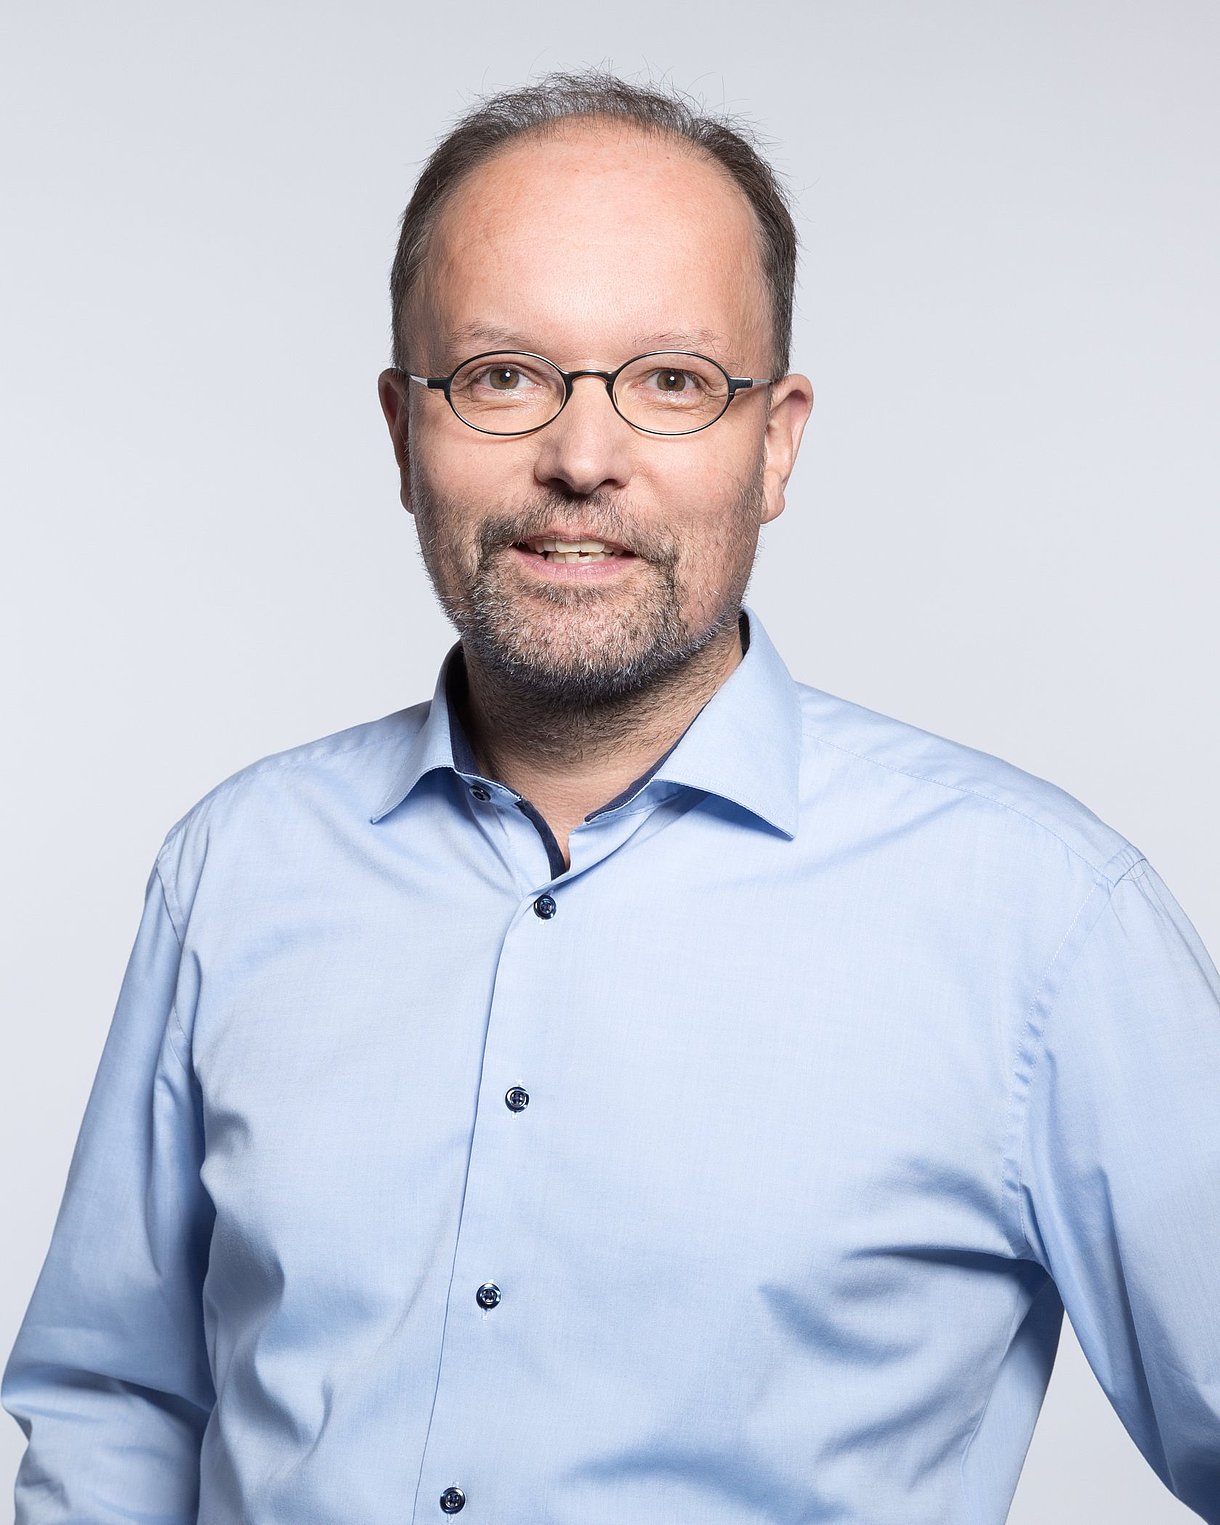 Porträtfoto zeigt Kopf und Rumpf, Ralf Metger trägt eine ovale Brille und ein hellblaues Hemd.